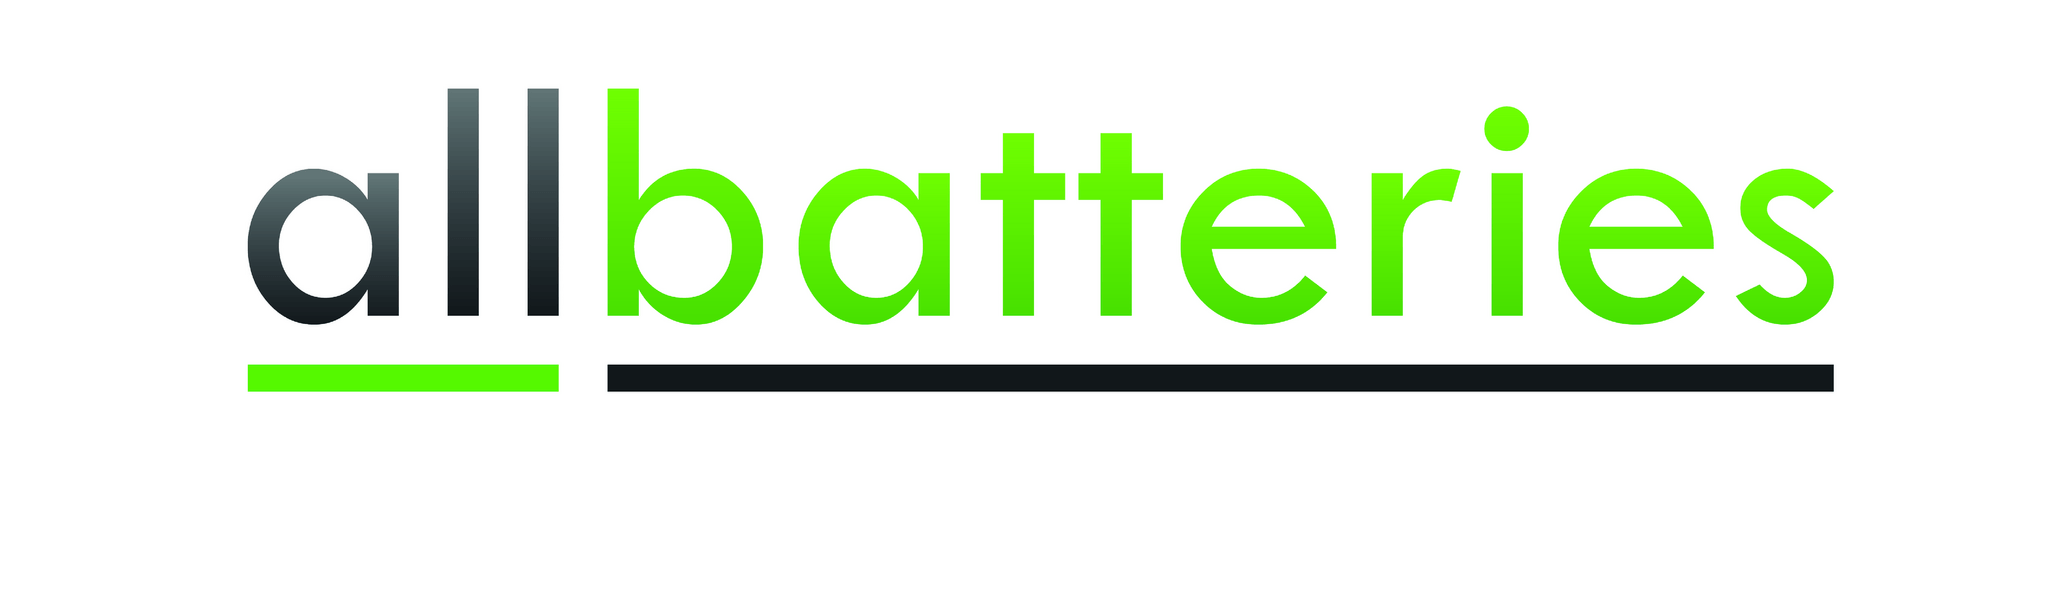 Allbatteries UK Ltd